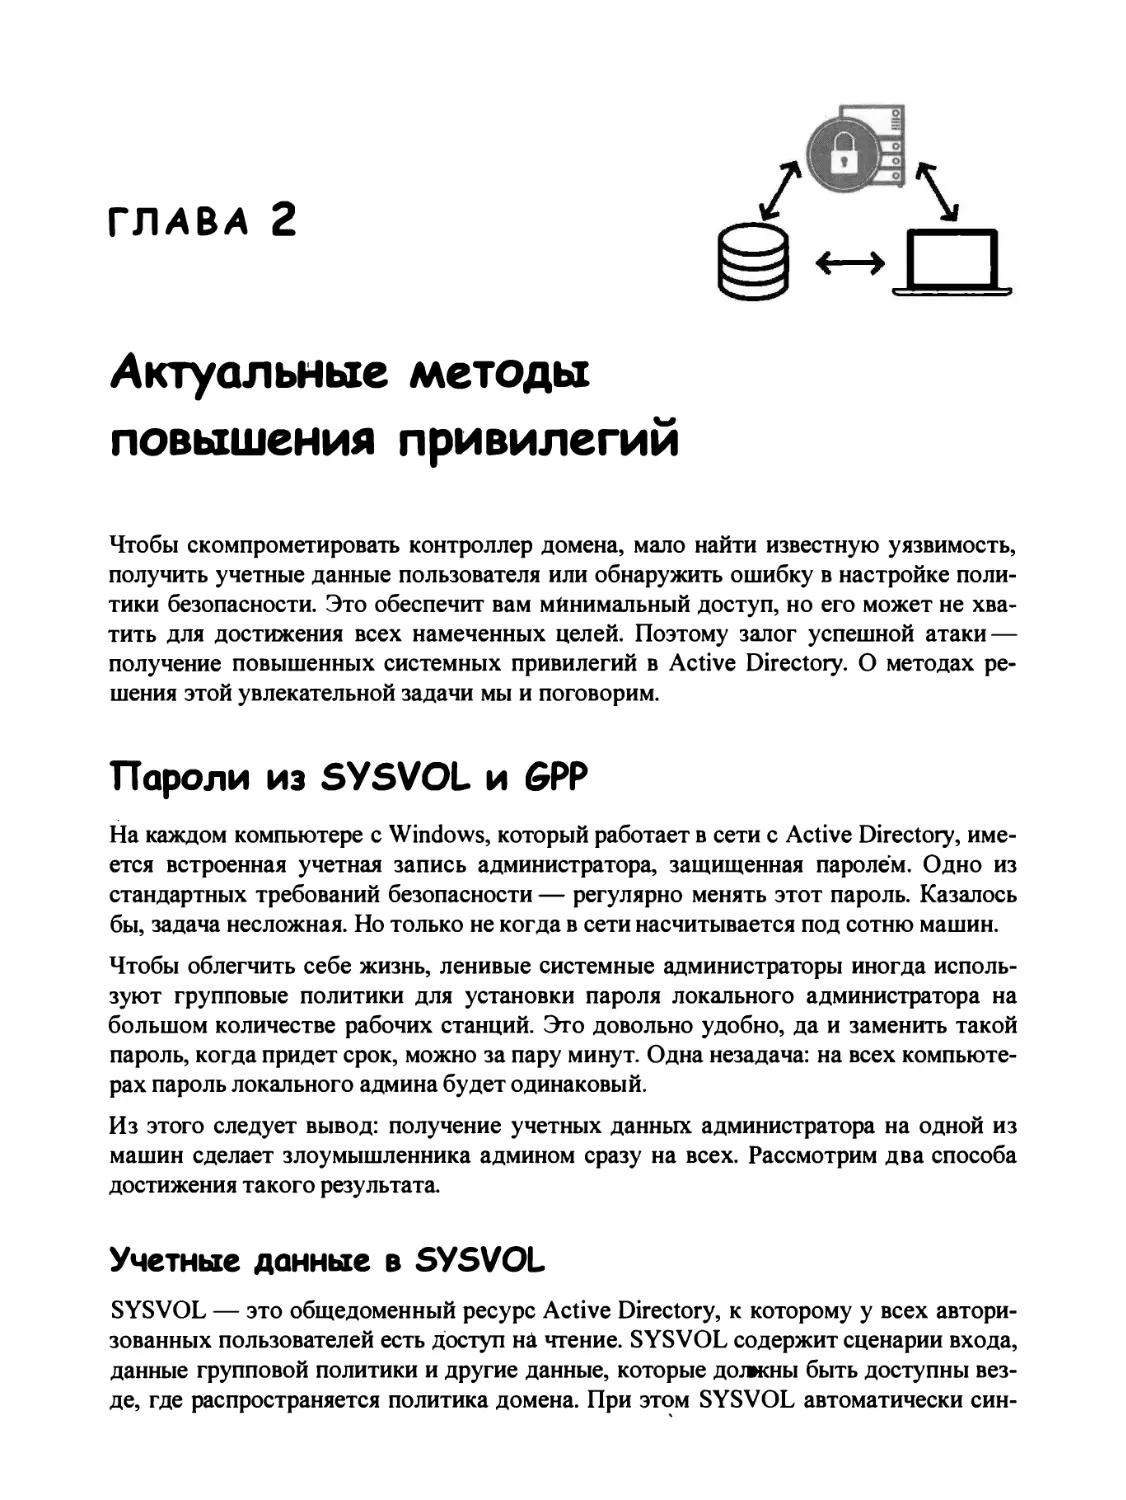 Глава 2. Актуальные методы повышения привилегий
Пароли из SYSVOL и GPP
Учетные данные в SYSVOL